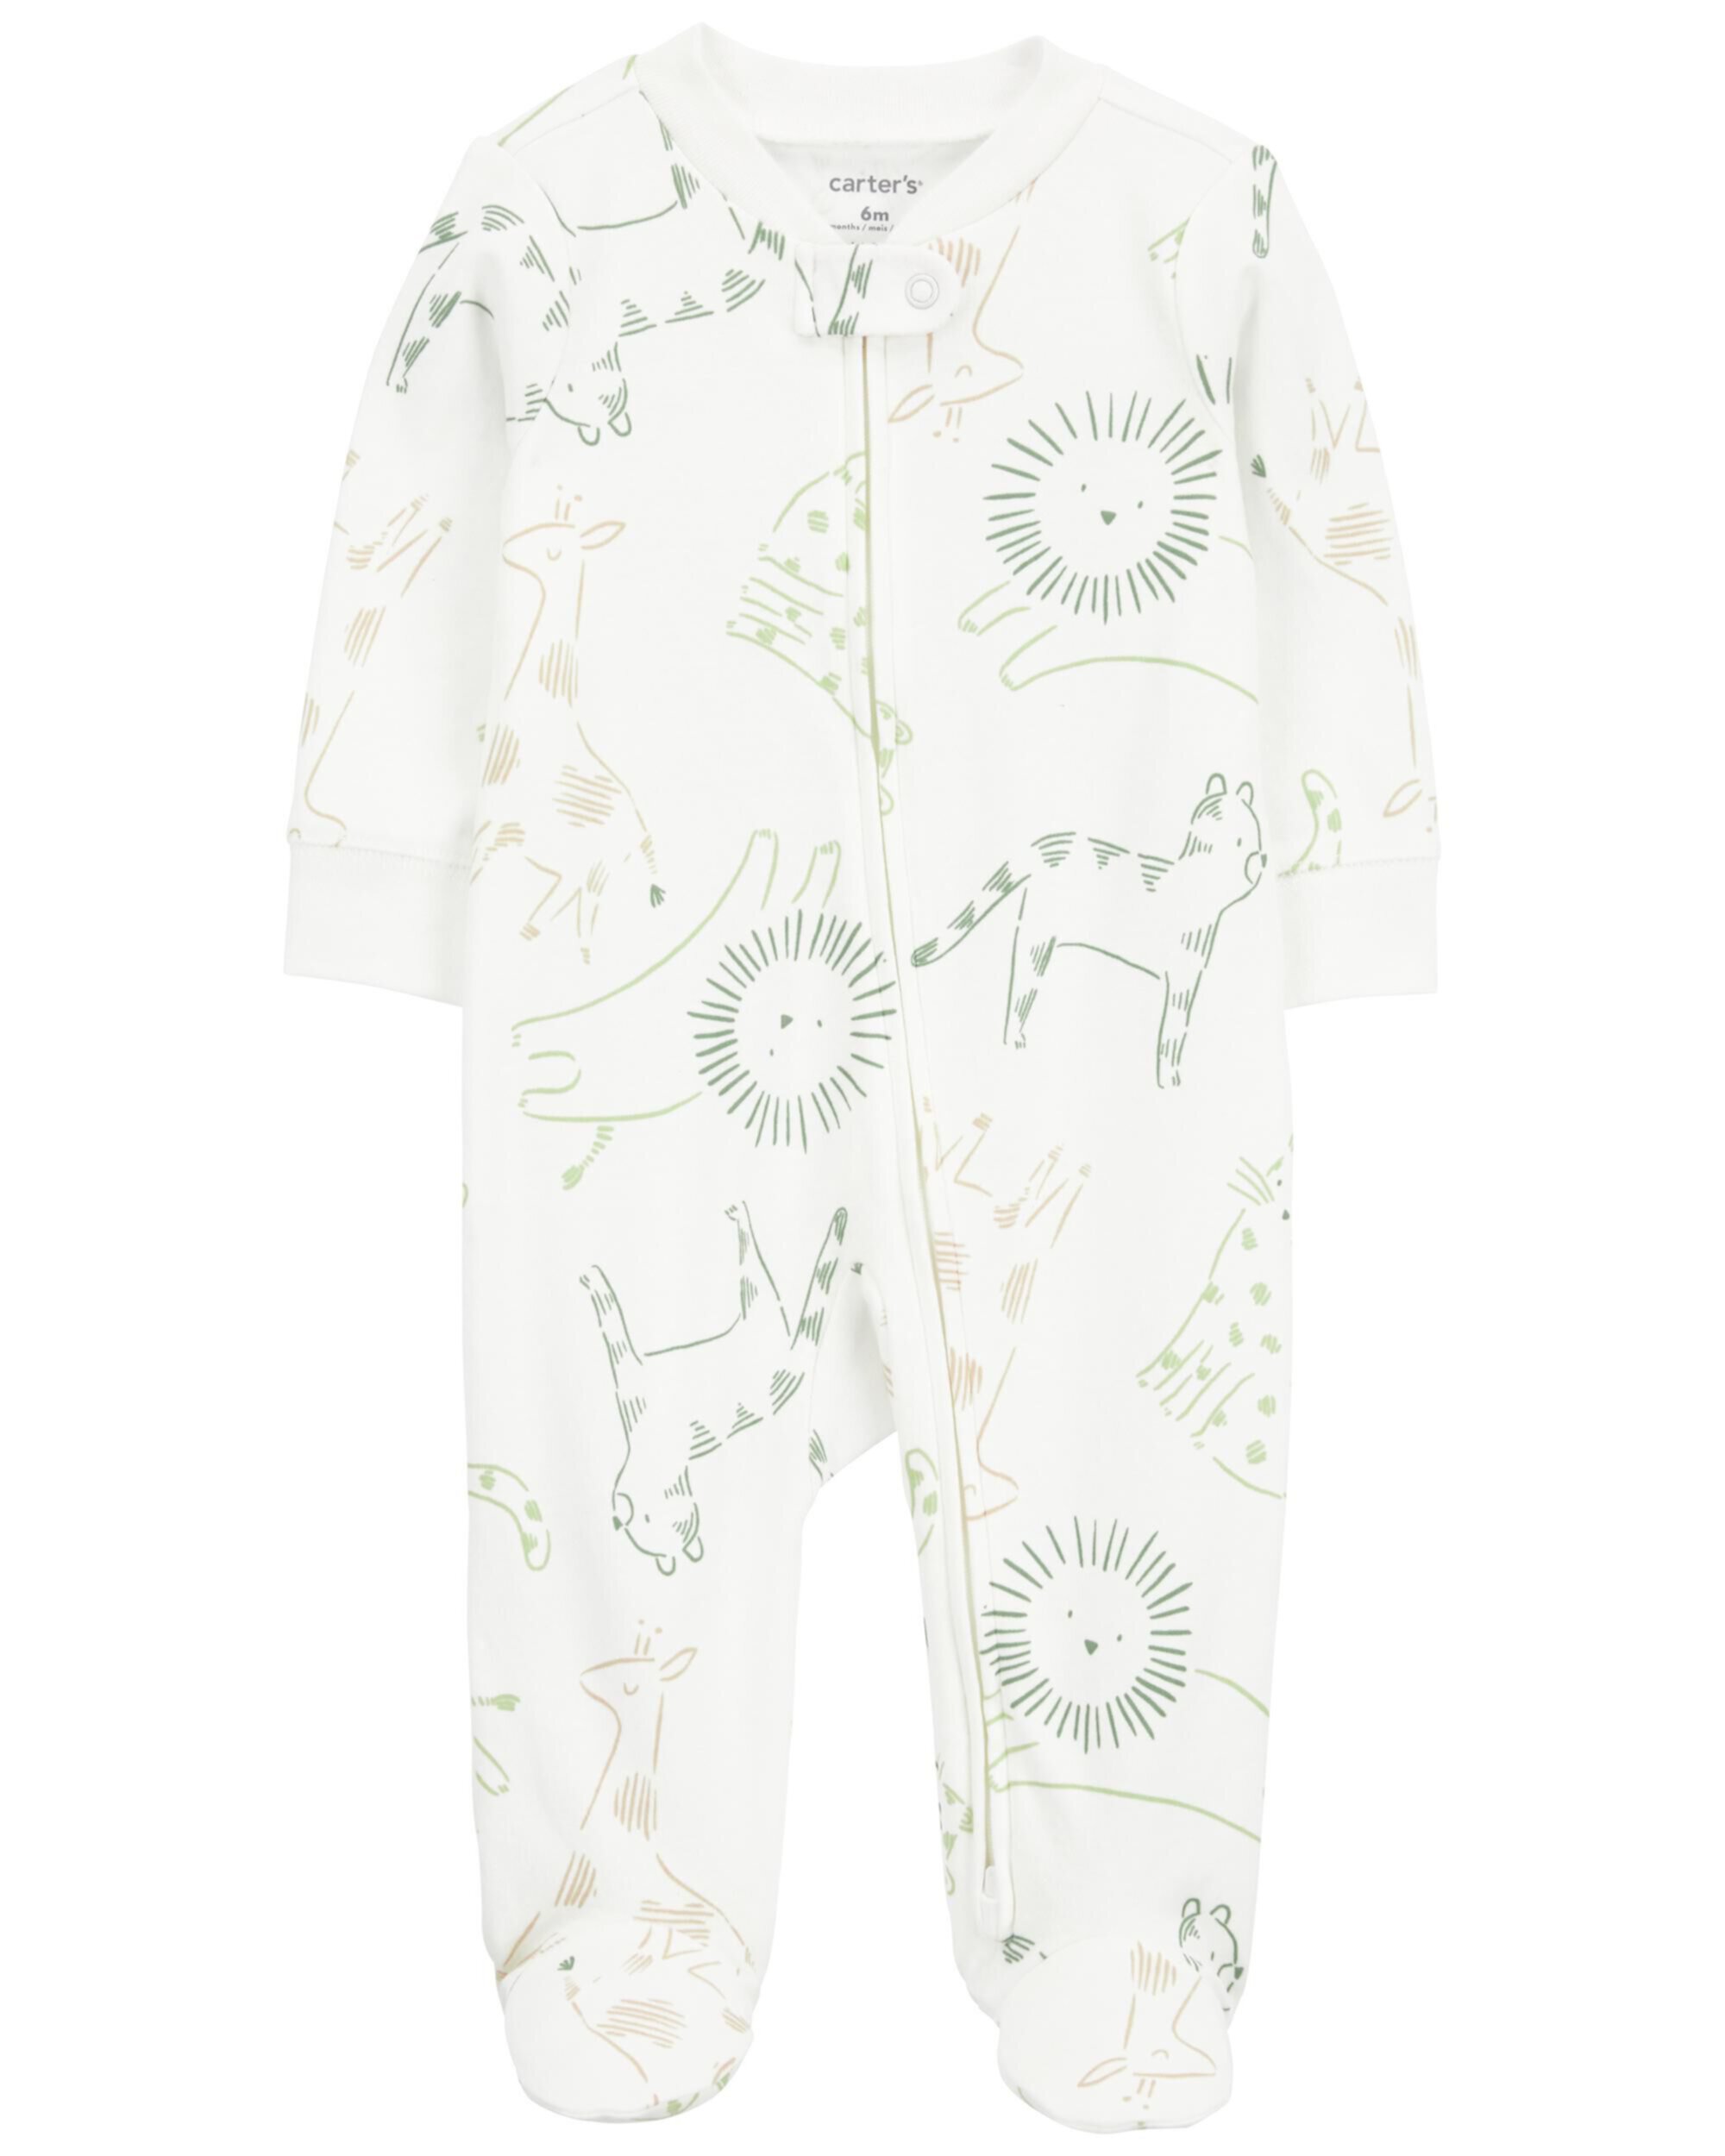 Хлопковая пижама для сна и игр на молнии с принтом животных для малышей Carter's